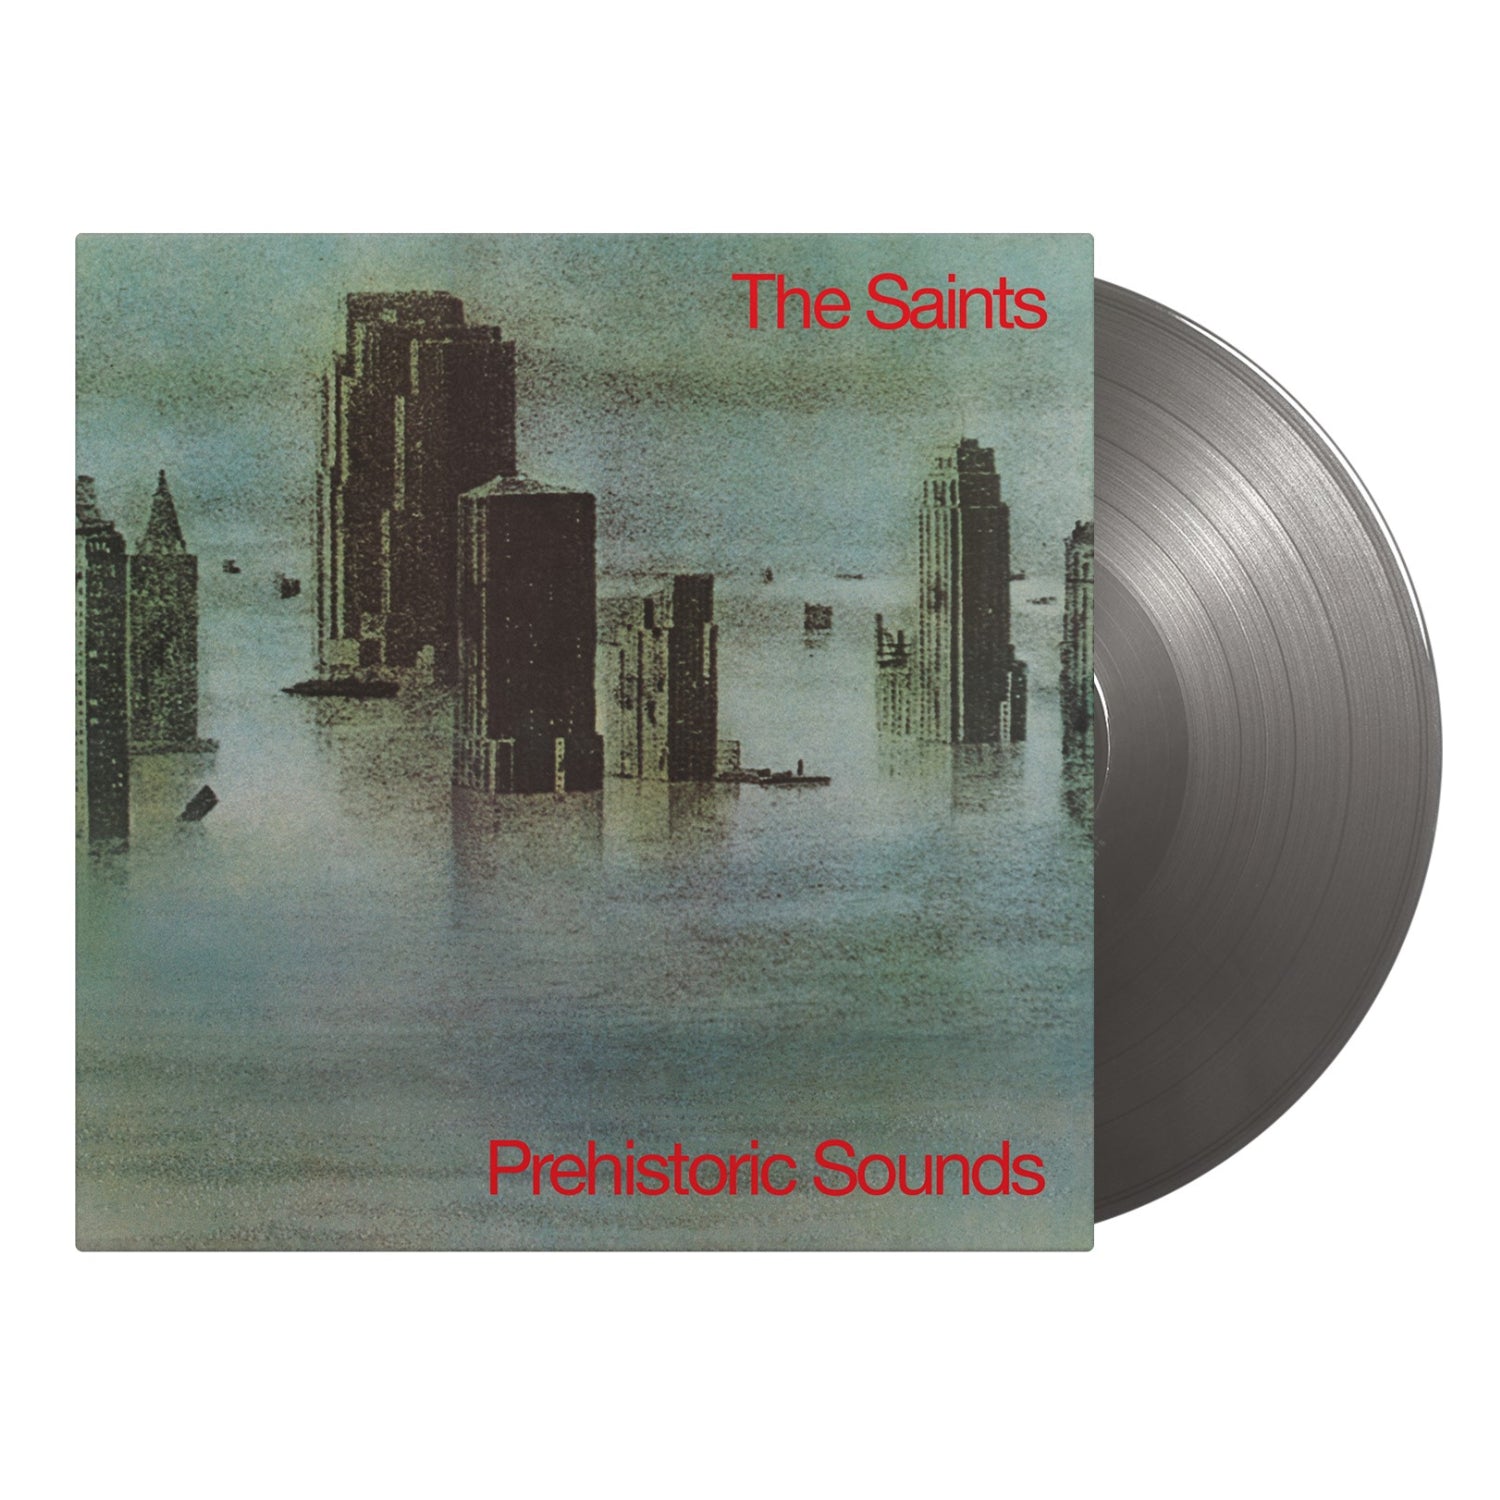 The Saints - Prehistoric Sounds: Limited Silver Vinyl LP